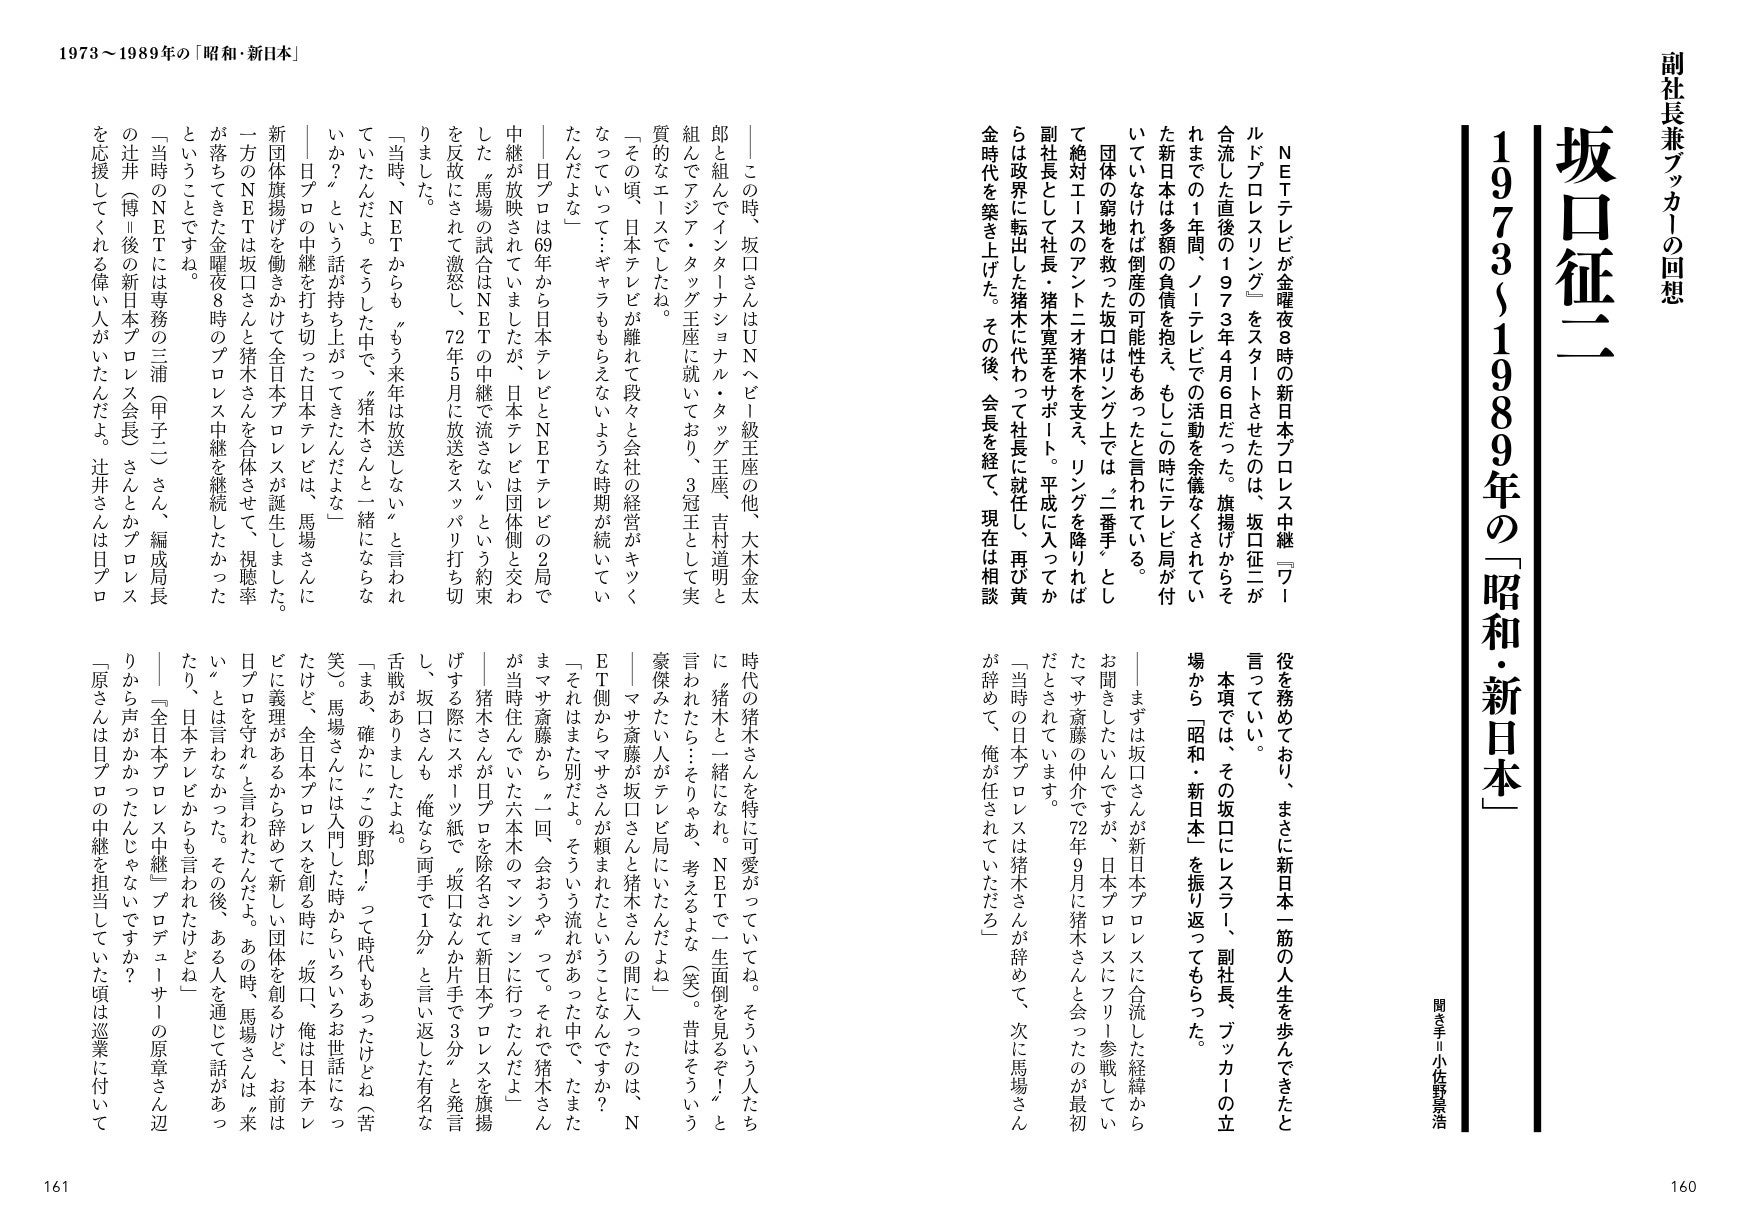 坂口征二が新日本プロレスへの合流から昭和の終焉までを振り返る３万字インタビュー